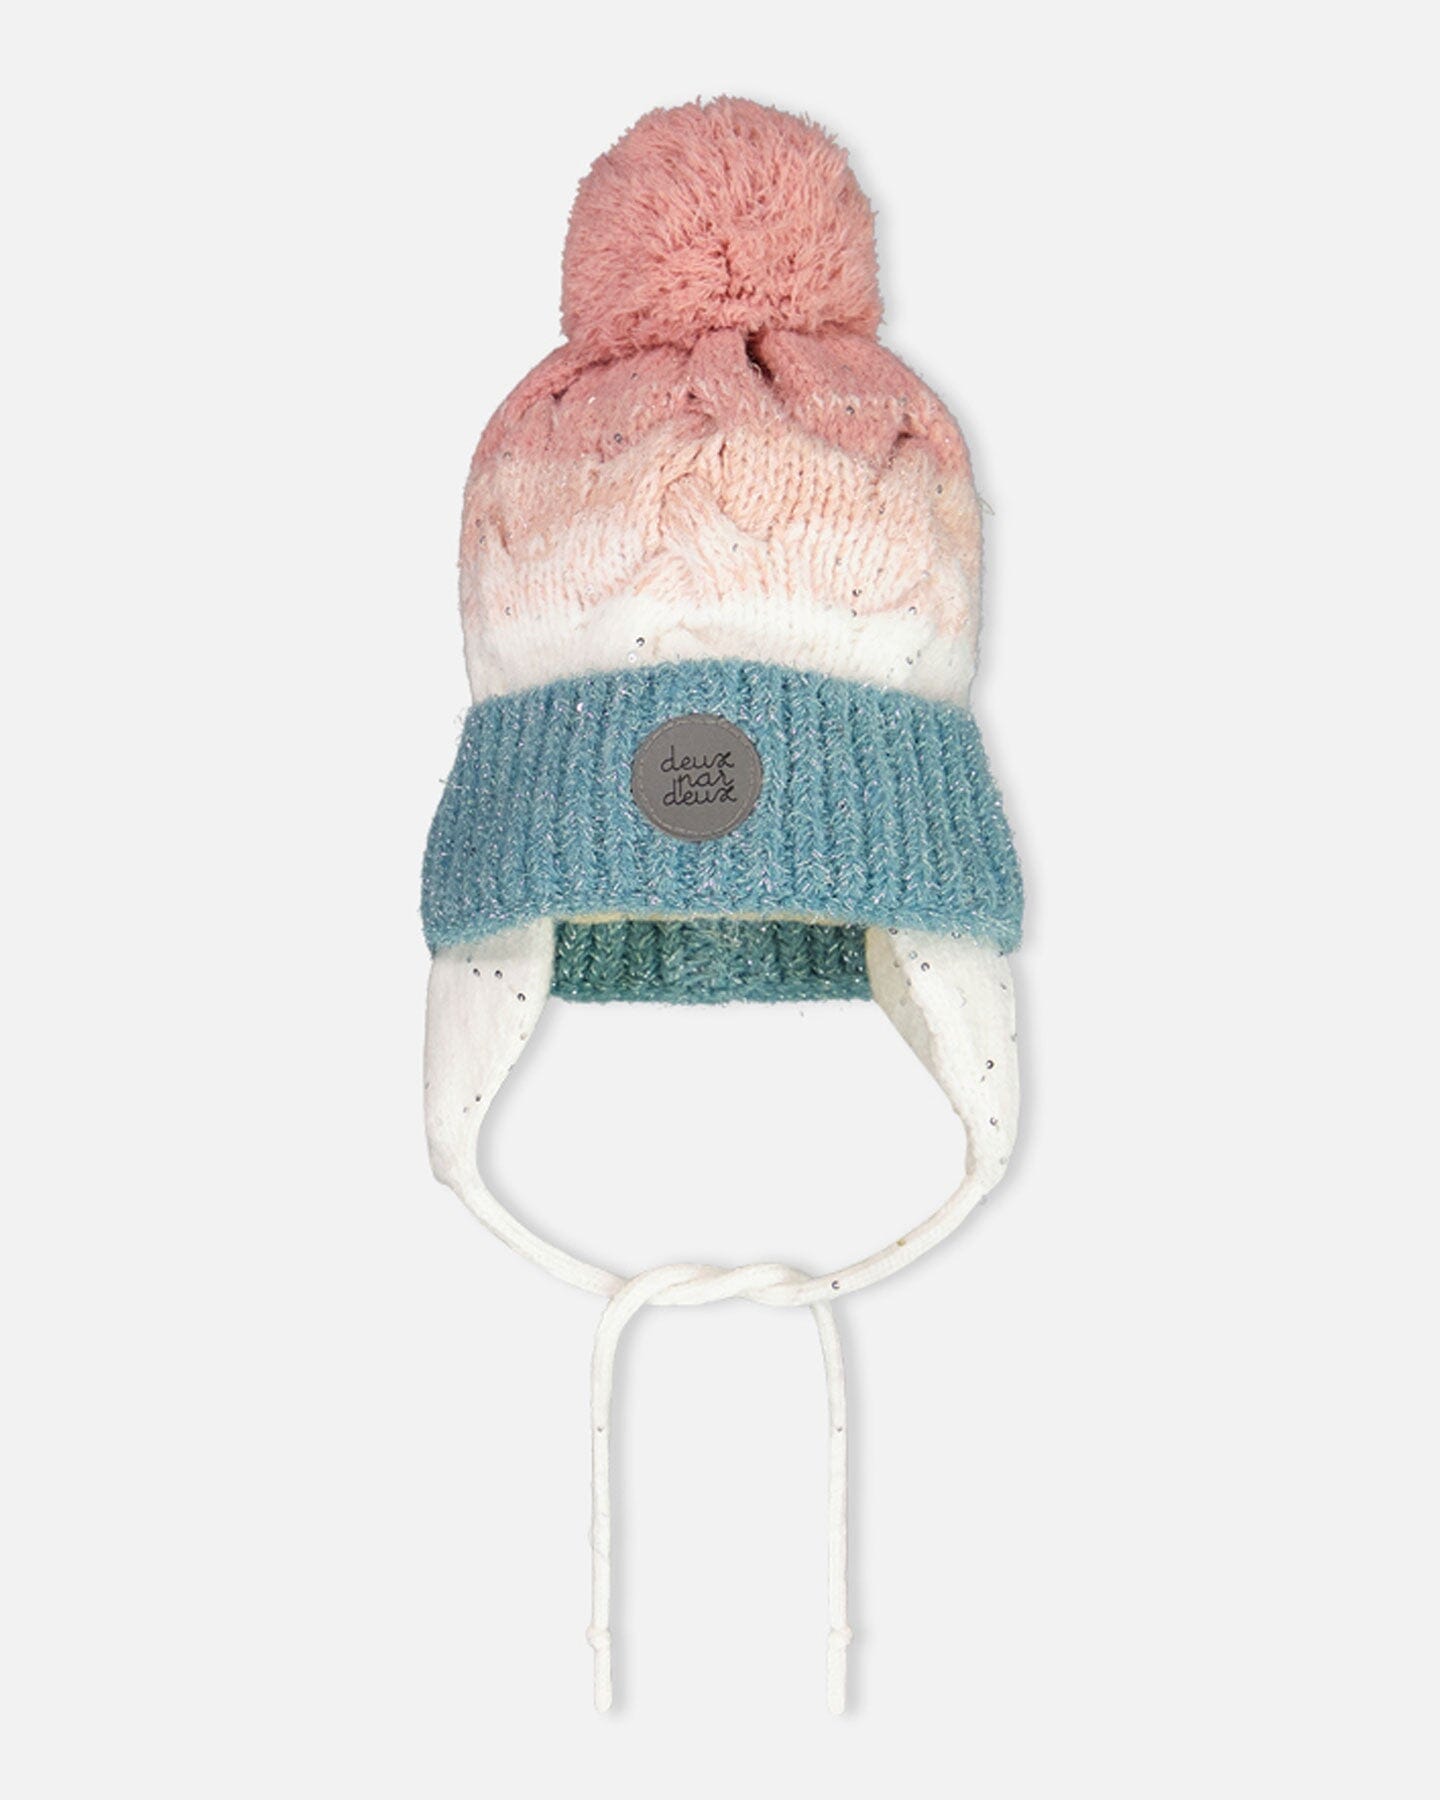 Pompom Knit Earflap Hat Pink And Blue Gradient Winter Accessories Deux par Deux 